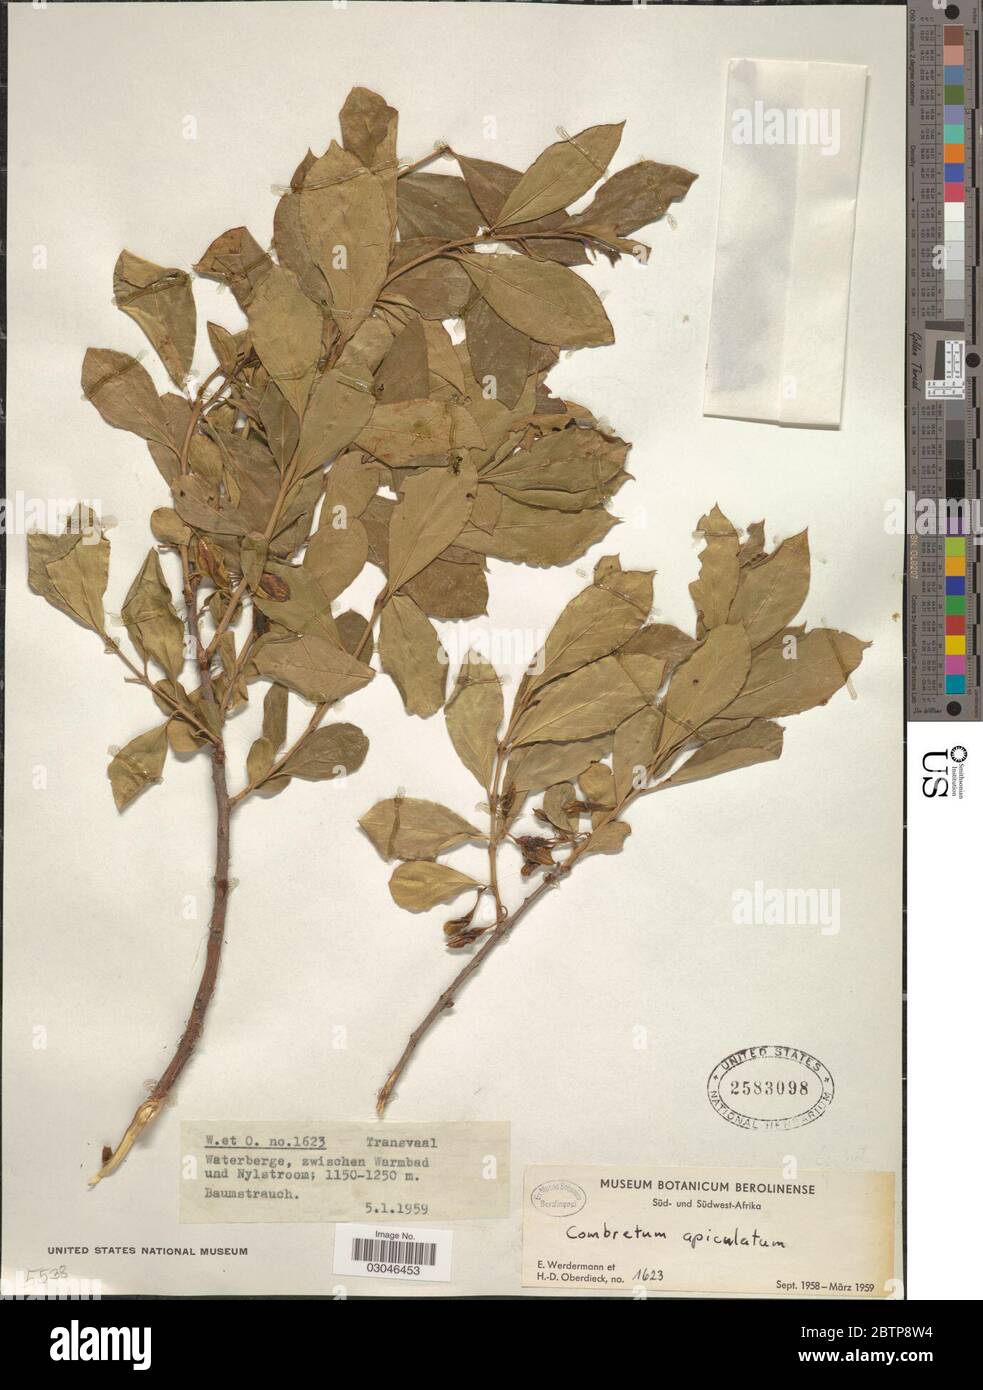 Combretum apiculatum subsp apiculatum. Stock Photo